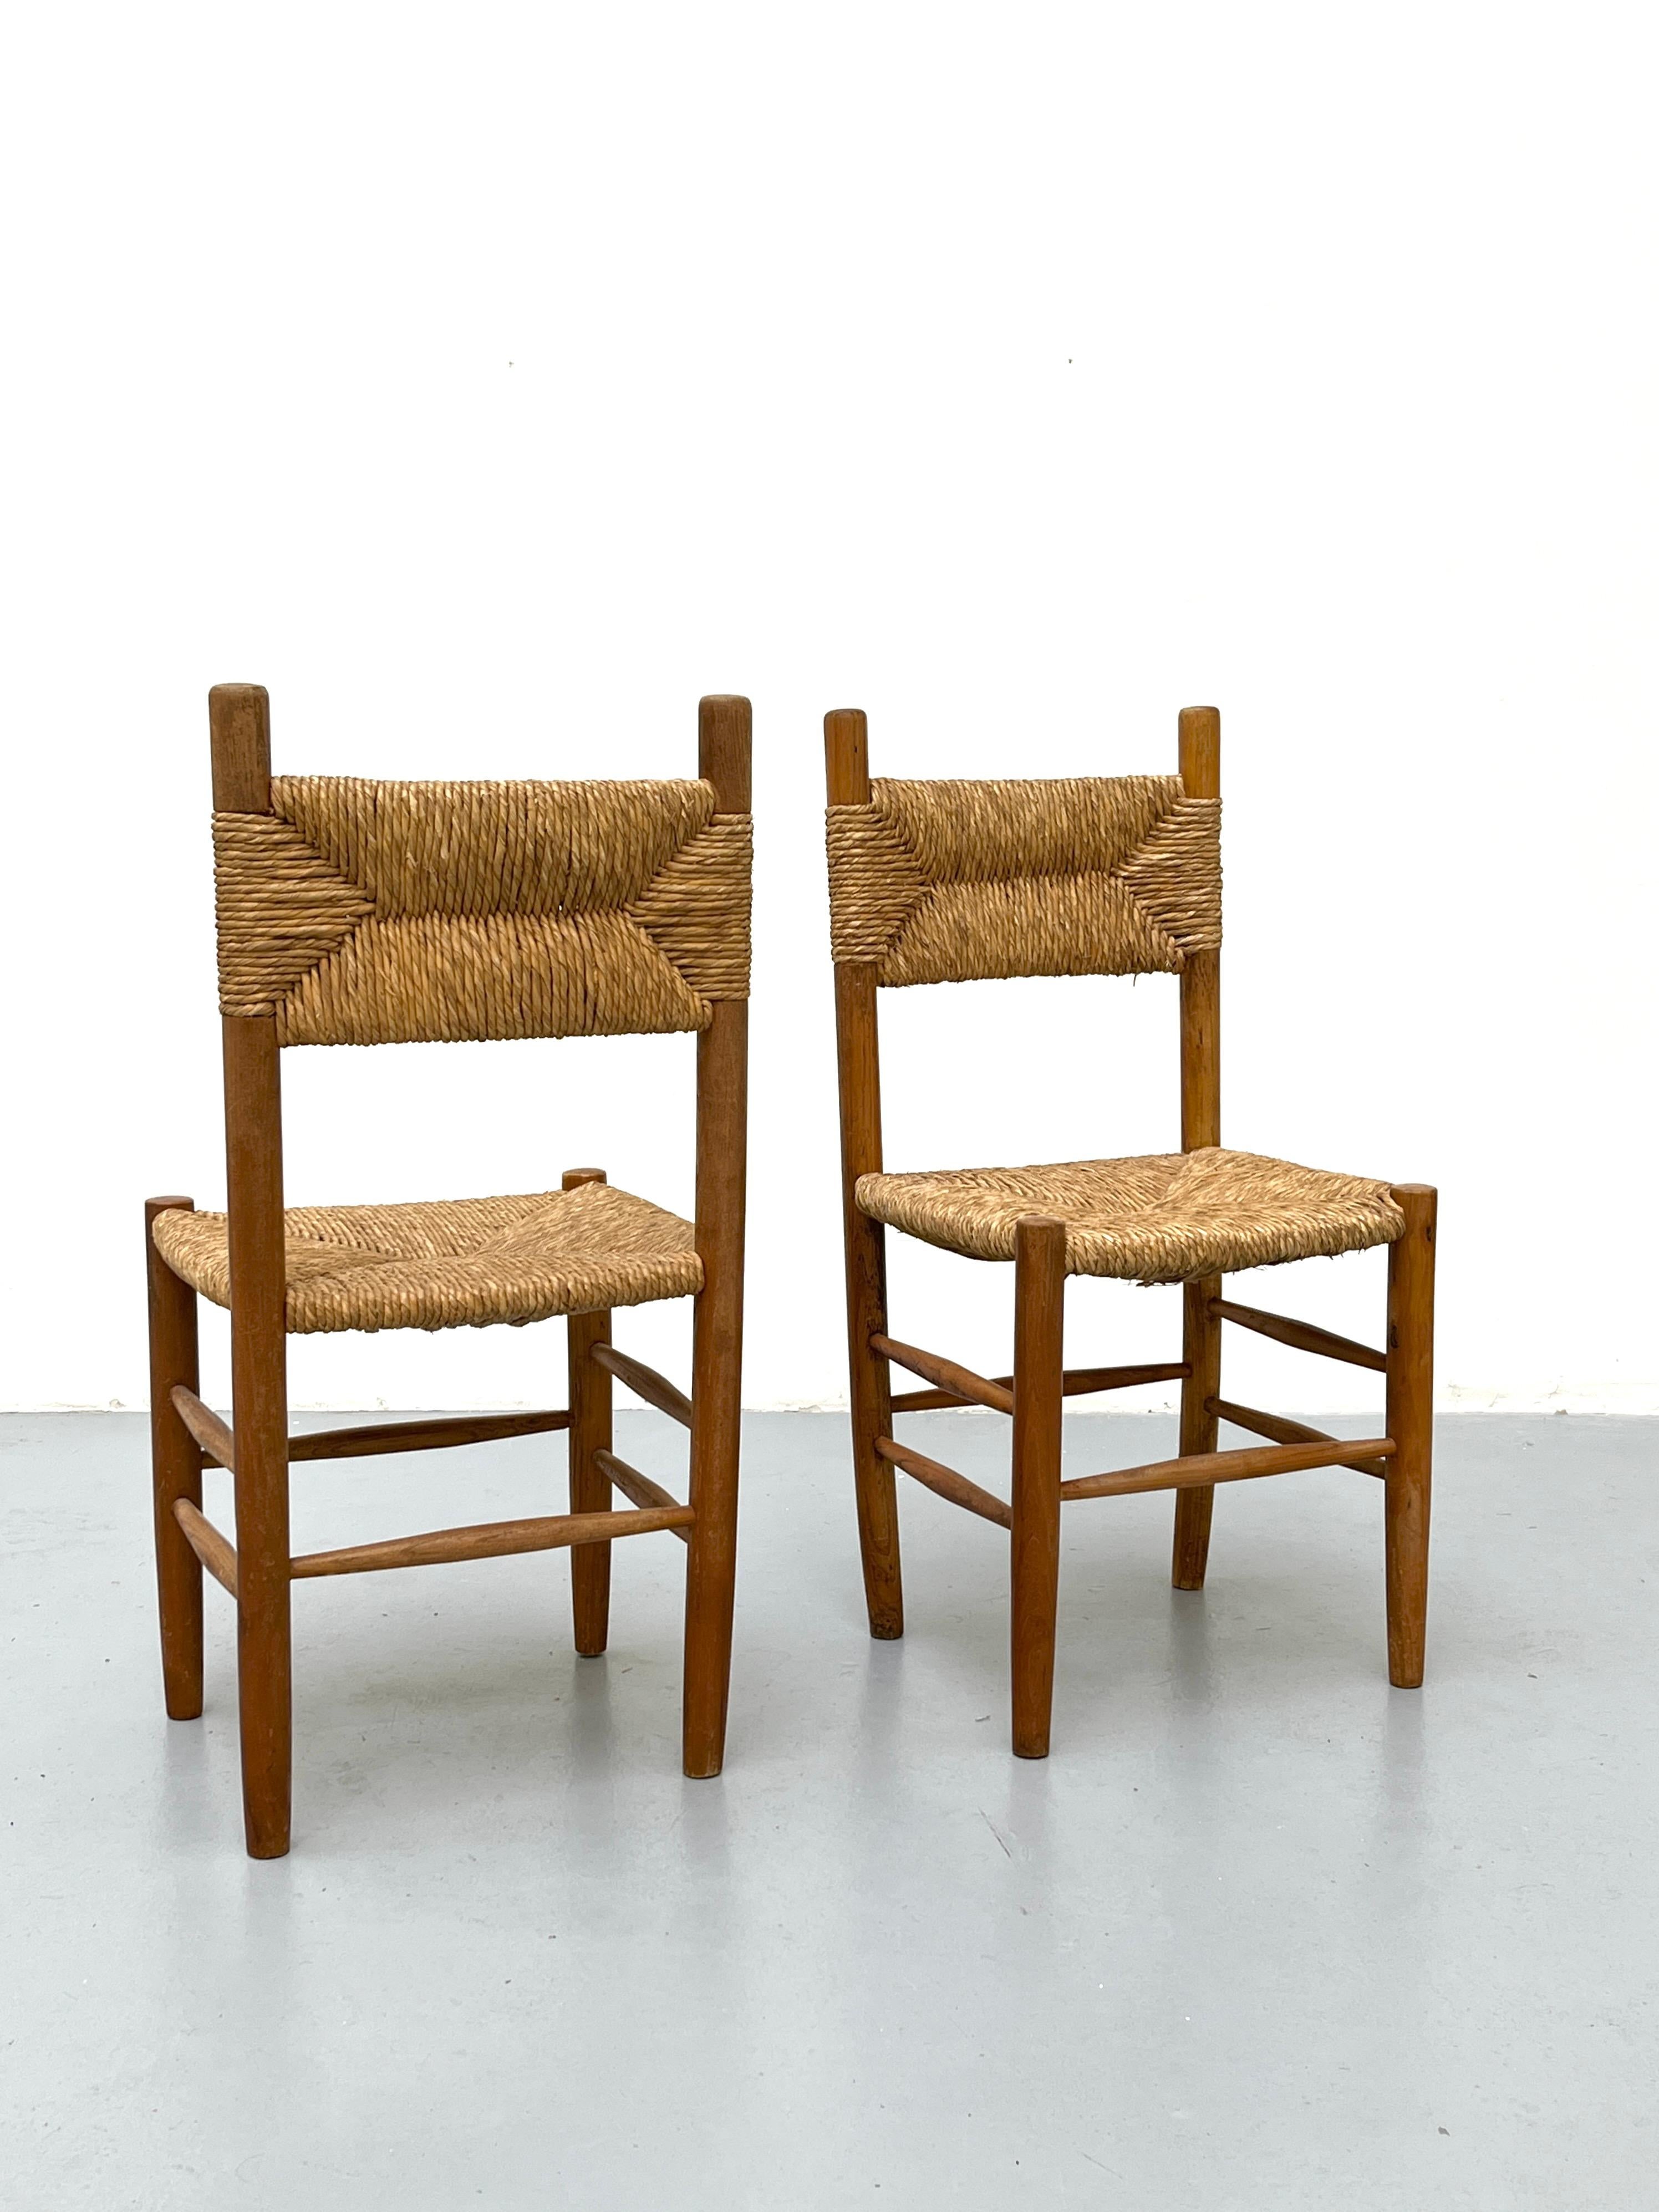 Paire de chaises en hêtre avec assise en paille dans le style de Charlotte Perriand

Charlotte Perriand s'est inspirée des motifs de paille de riz japonais. Elle utilise l'aspect de leur mino, une cape de pluie, pour ses créations tissées, comme